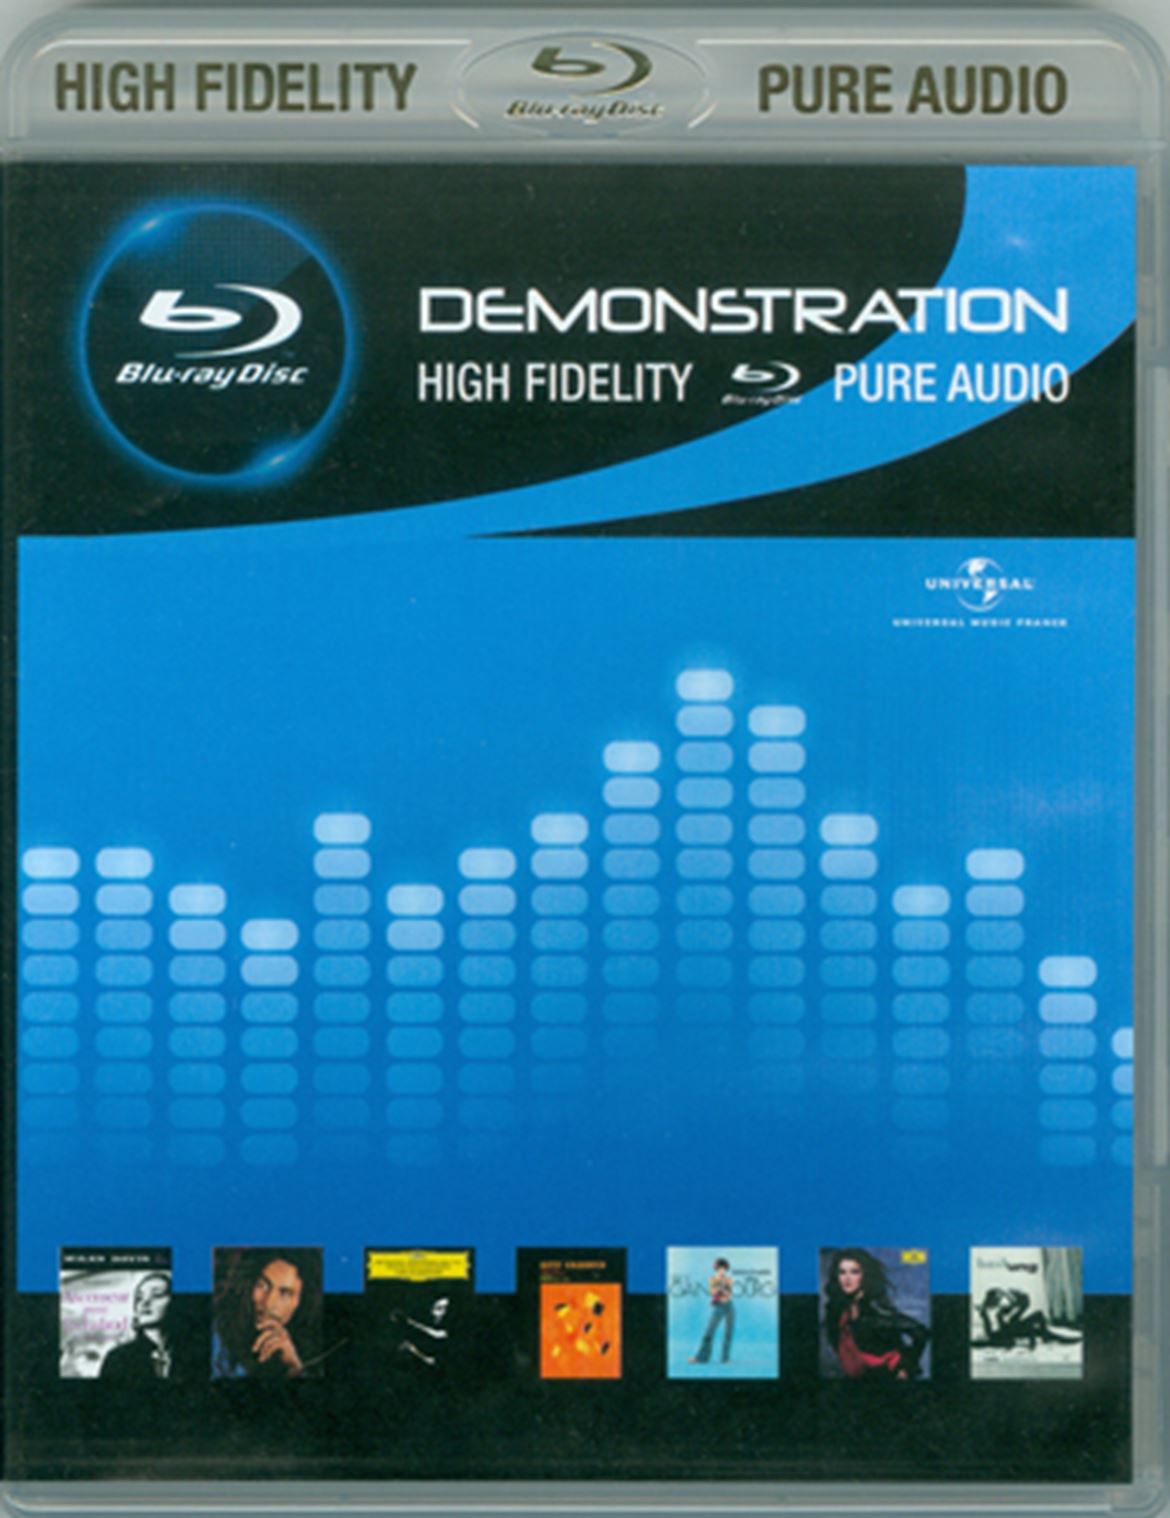 Capa do Blu-Ray de promoção da Pure Audio (catálogo da Universal a 96/24)